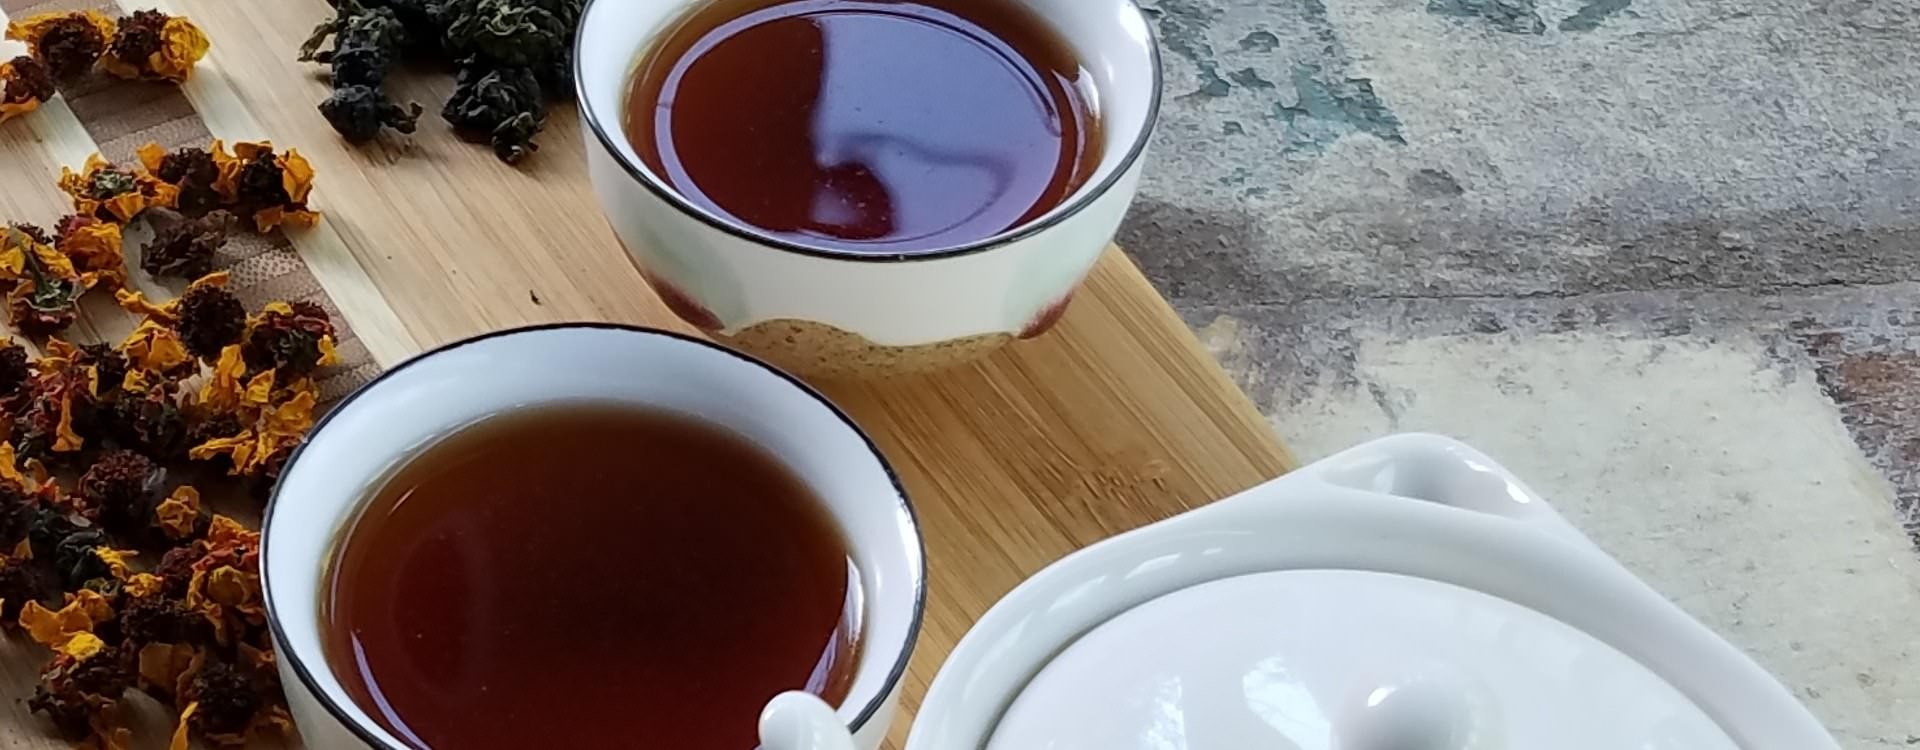 Quieres saber cómo preparar una perfecta taza de té? - CaféTéArte